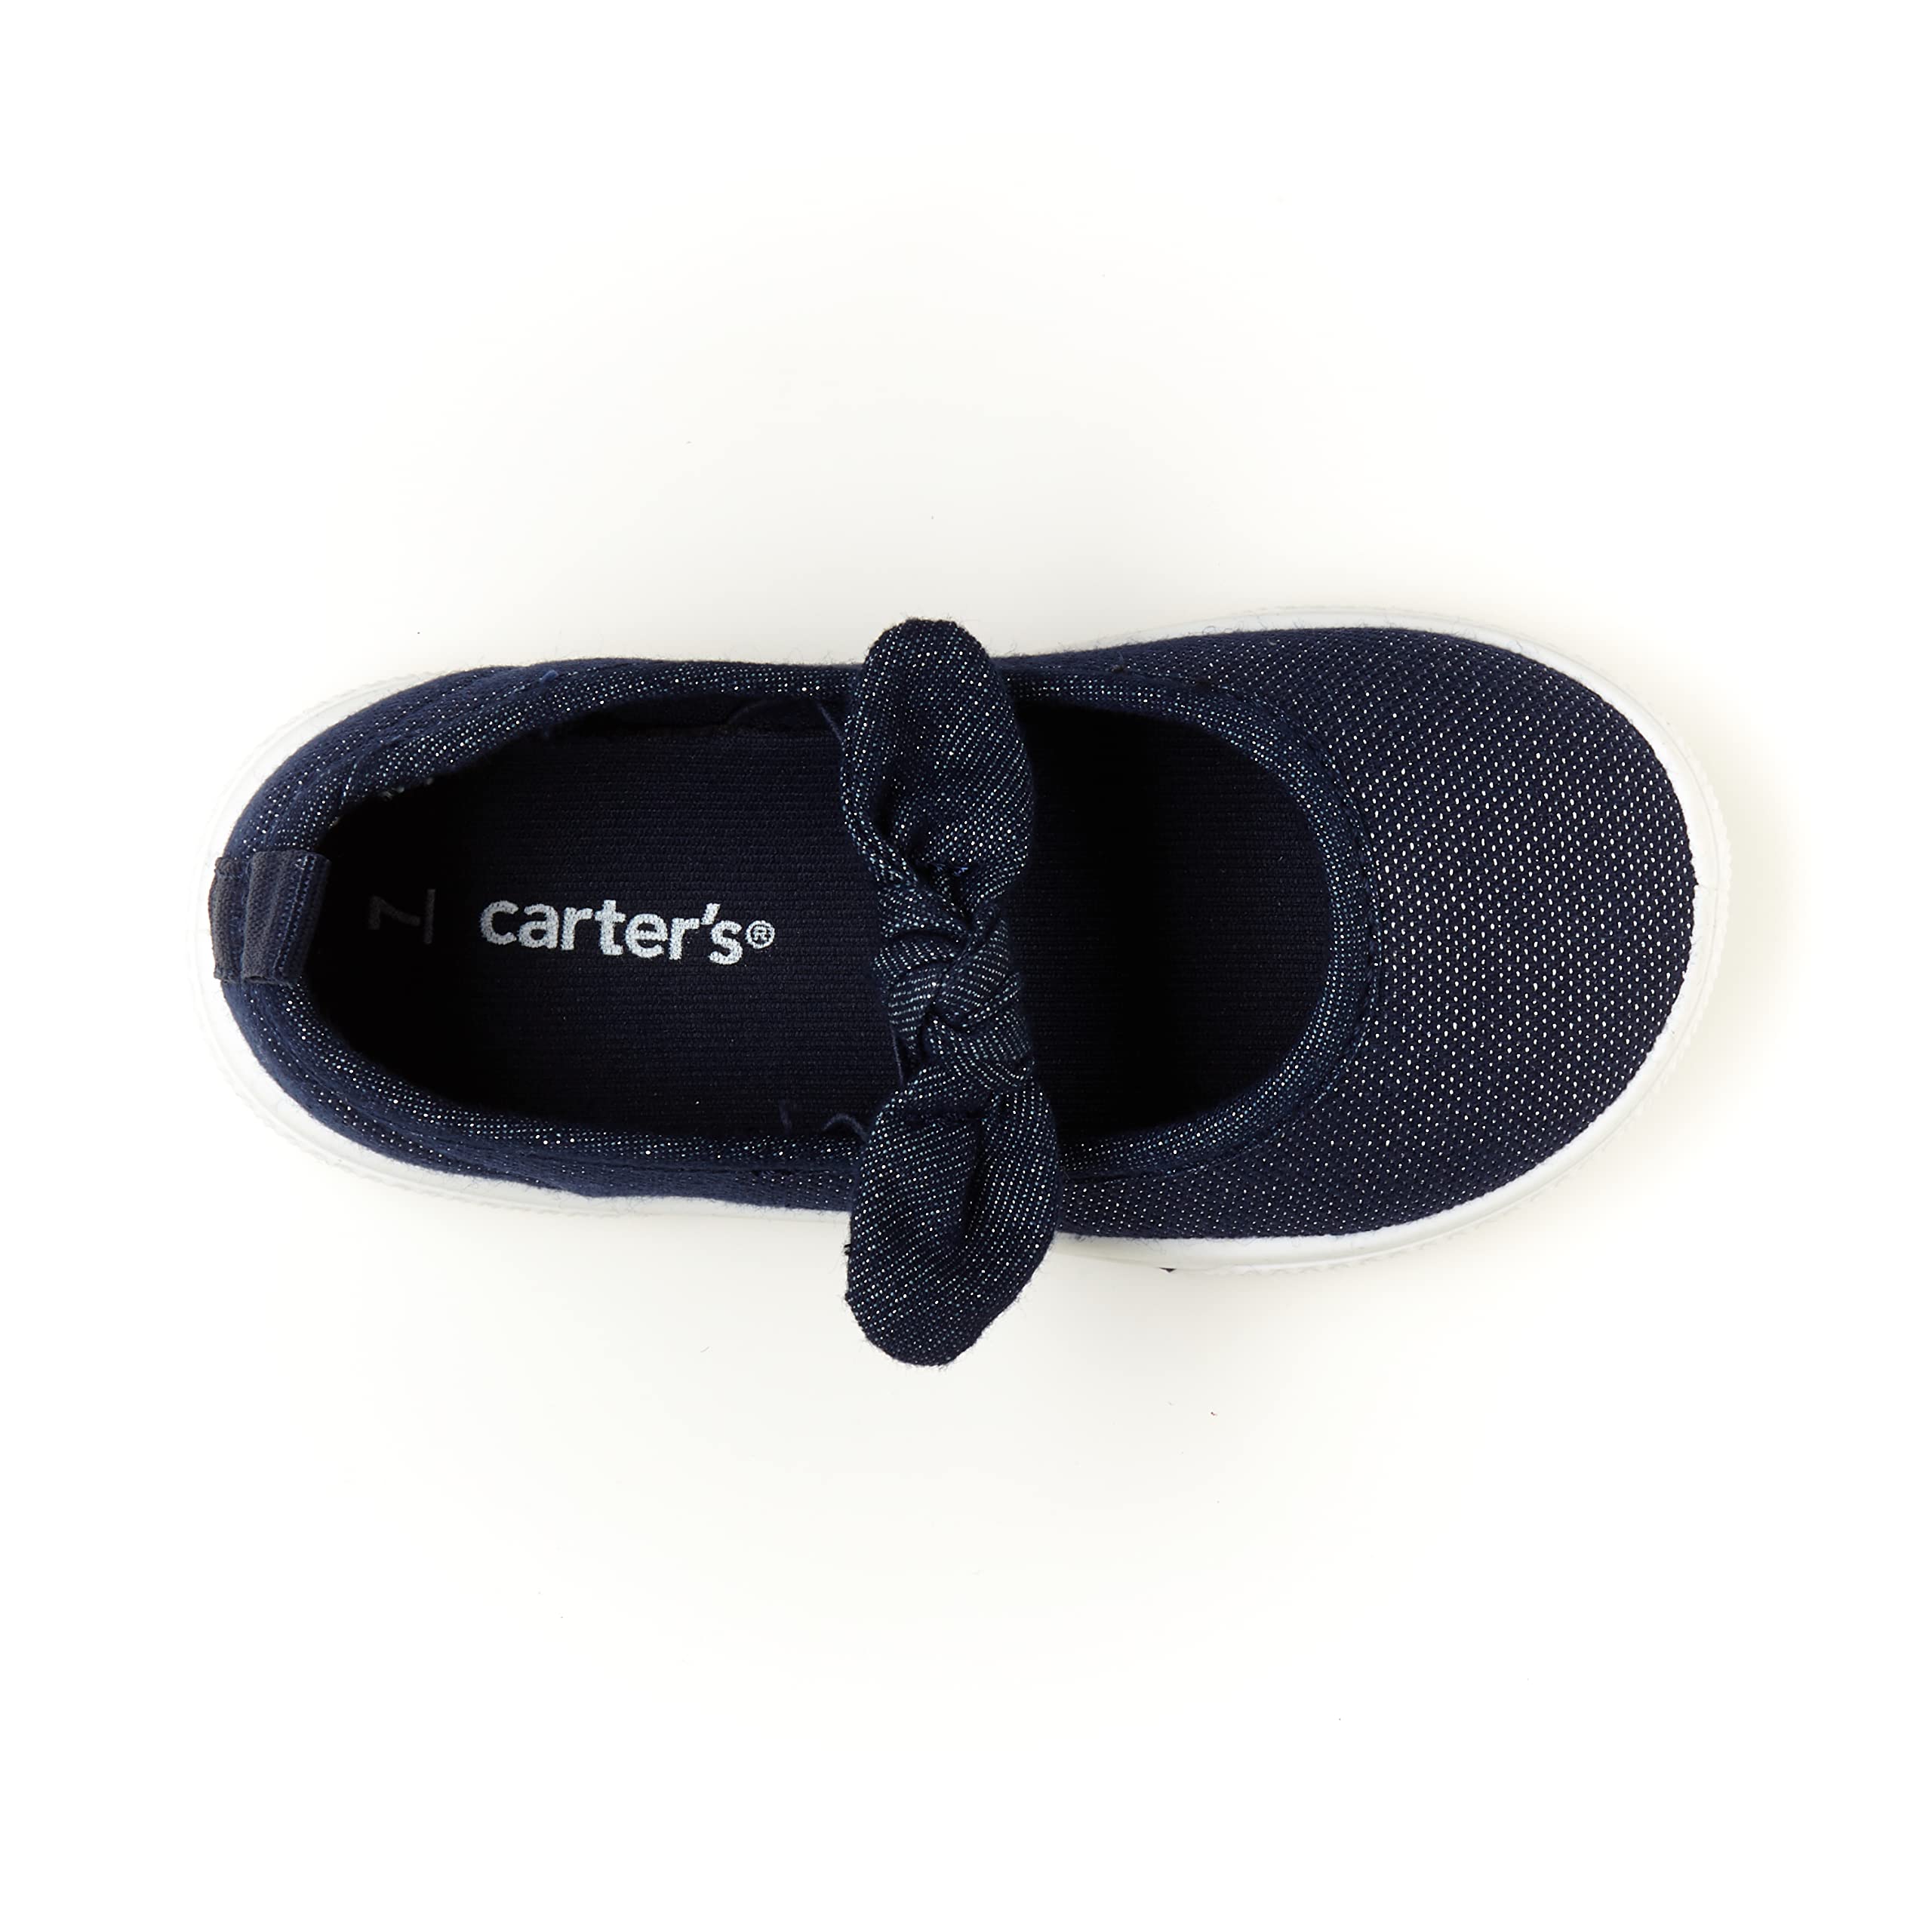 Carter's Girl's Capri Slip-On Sneaker